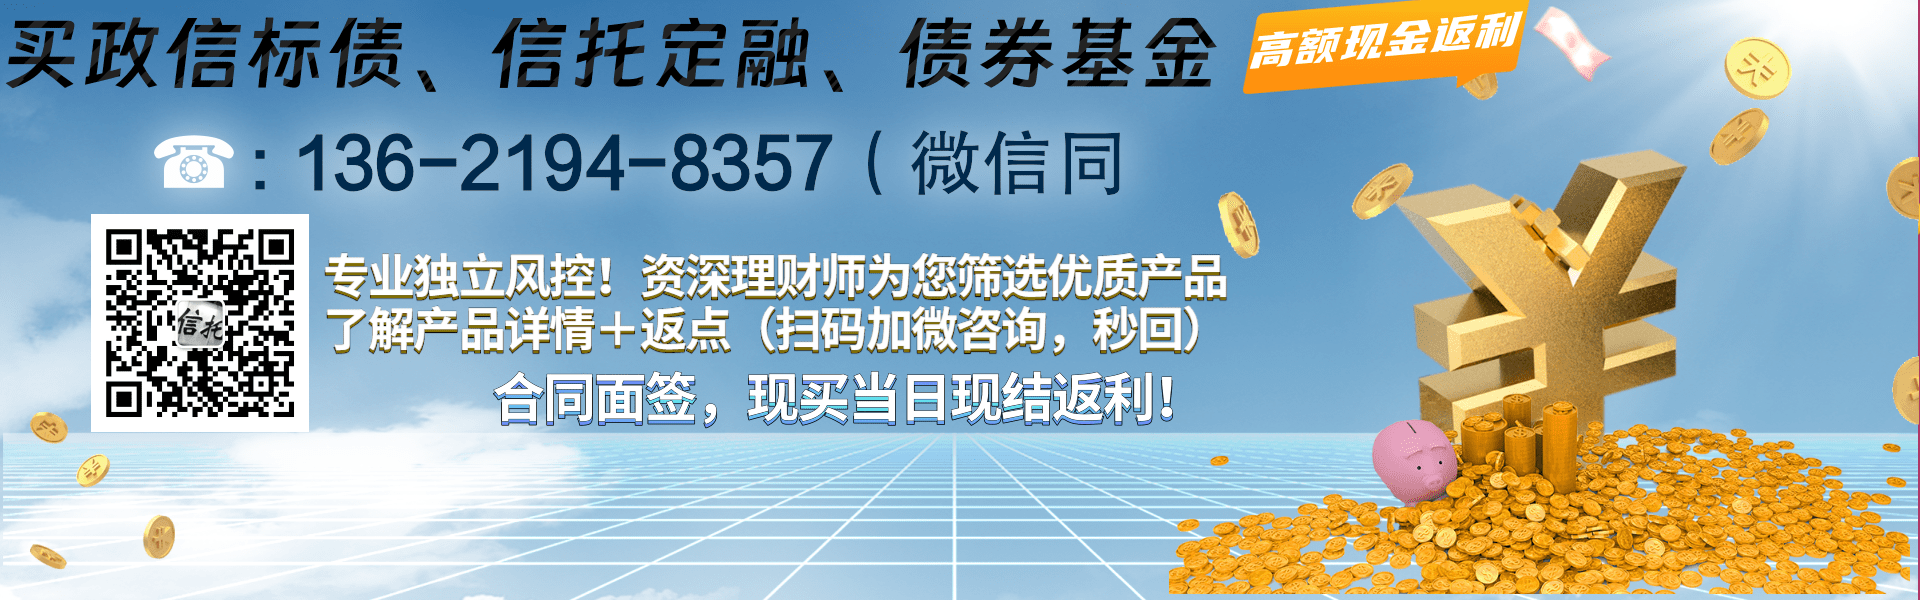 央企信托-702号扬州江都非标集合资金信托计划